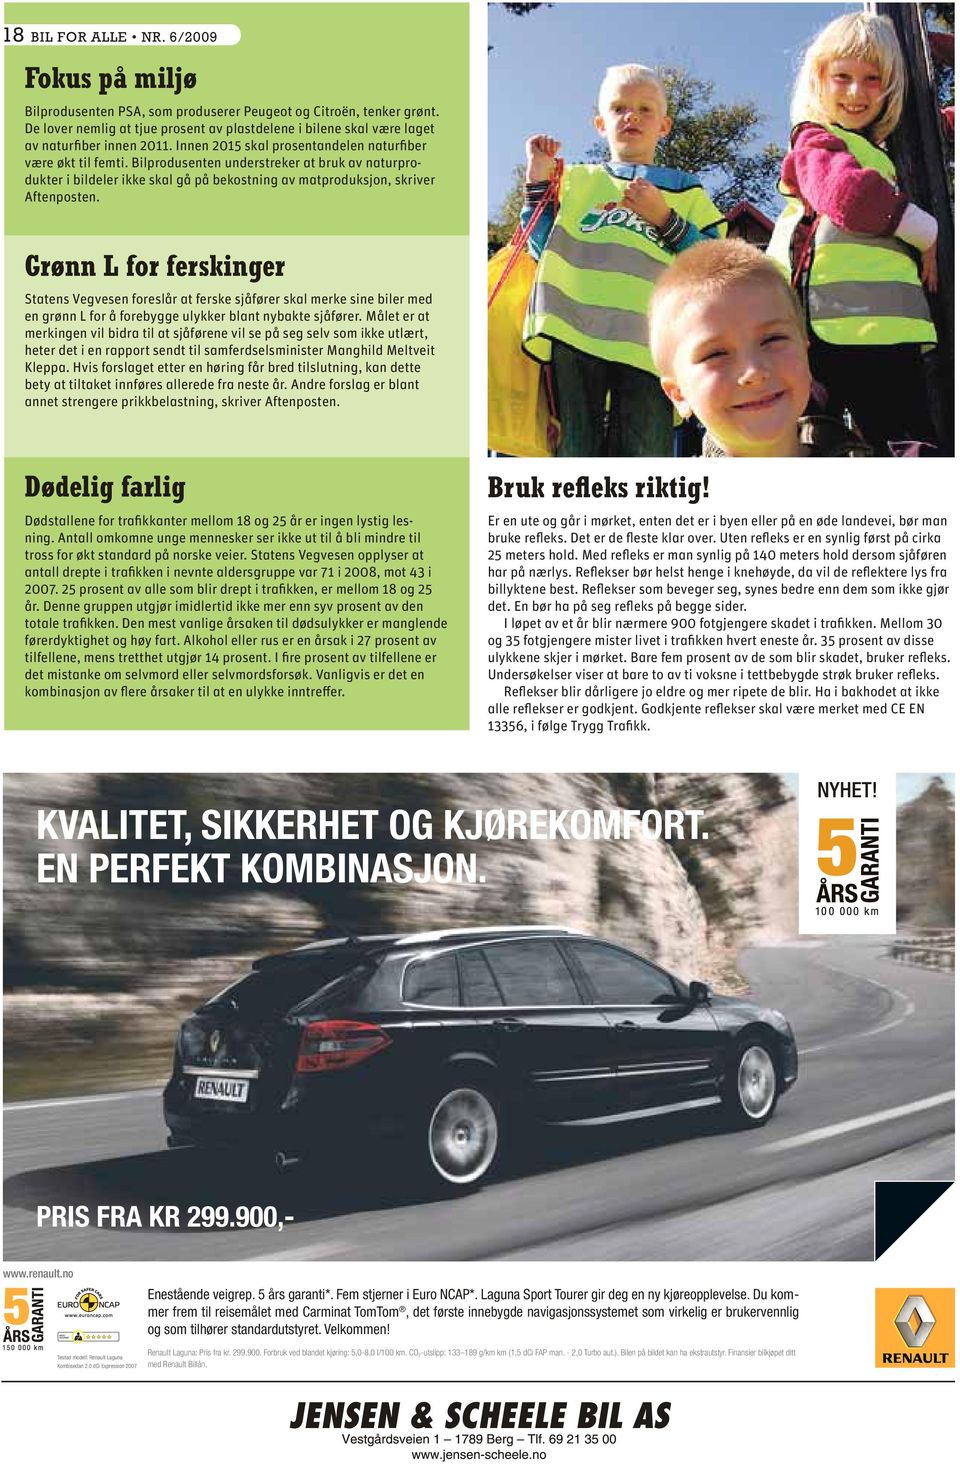 Bilprodusenten understreker at bruk av naturprodukter i bildeler ikke skal gå på bekostning av matproduksjon, skriver Aftenposten.